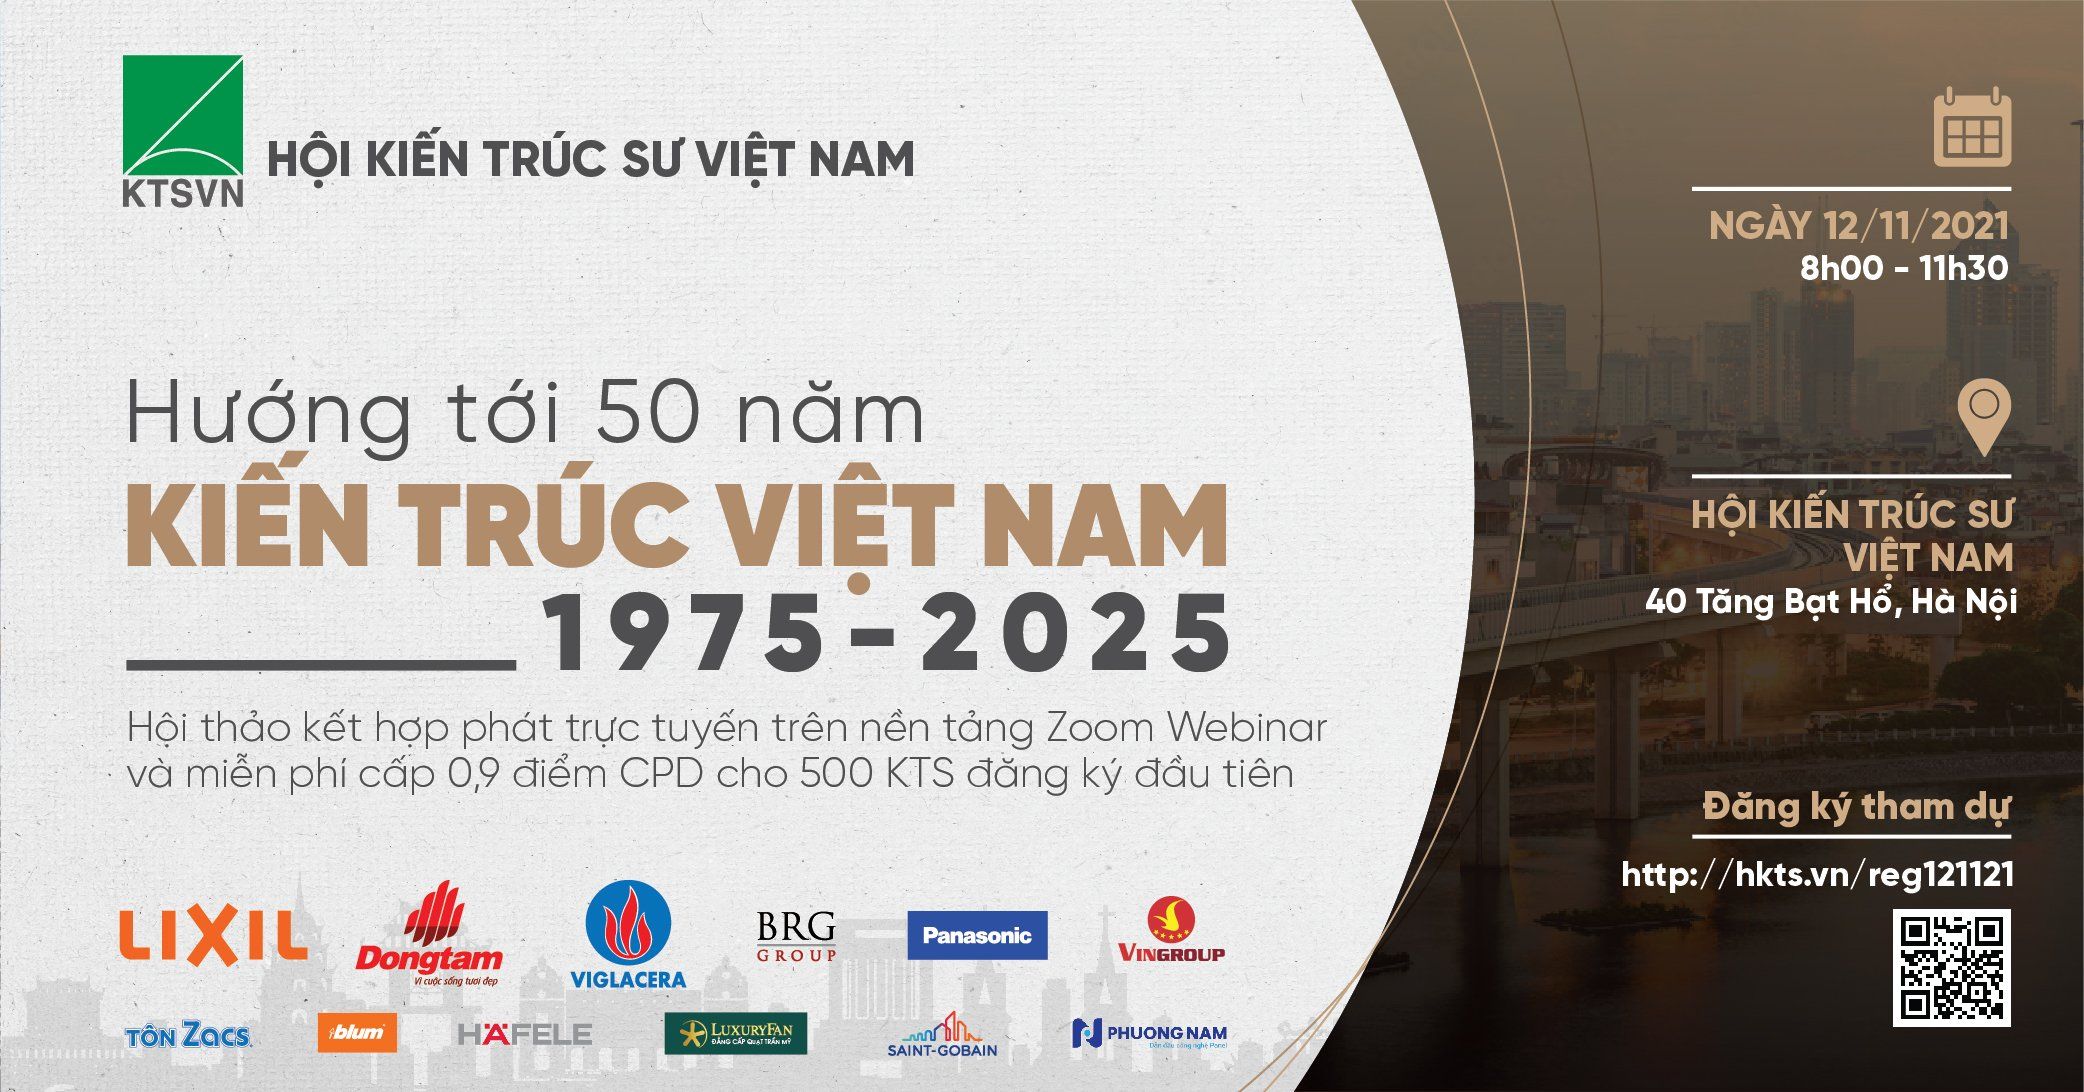 10 sự kiện nổi bật ngành Kiến trúc - Xây dựng Việt Nam năm 2021